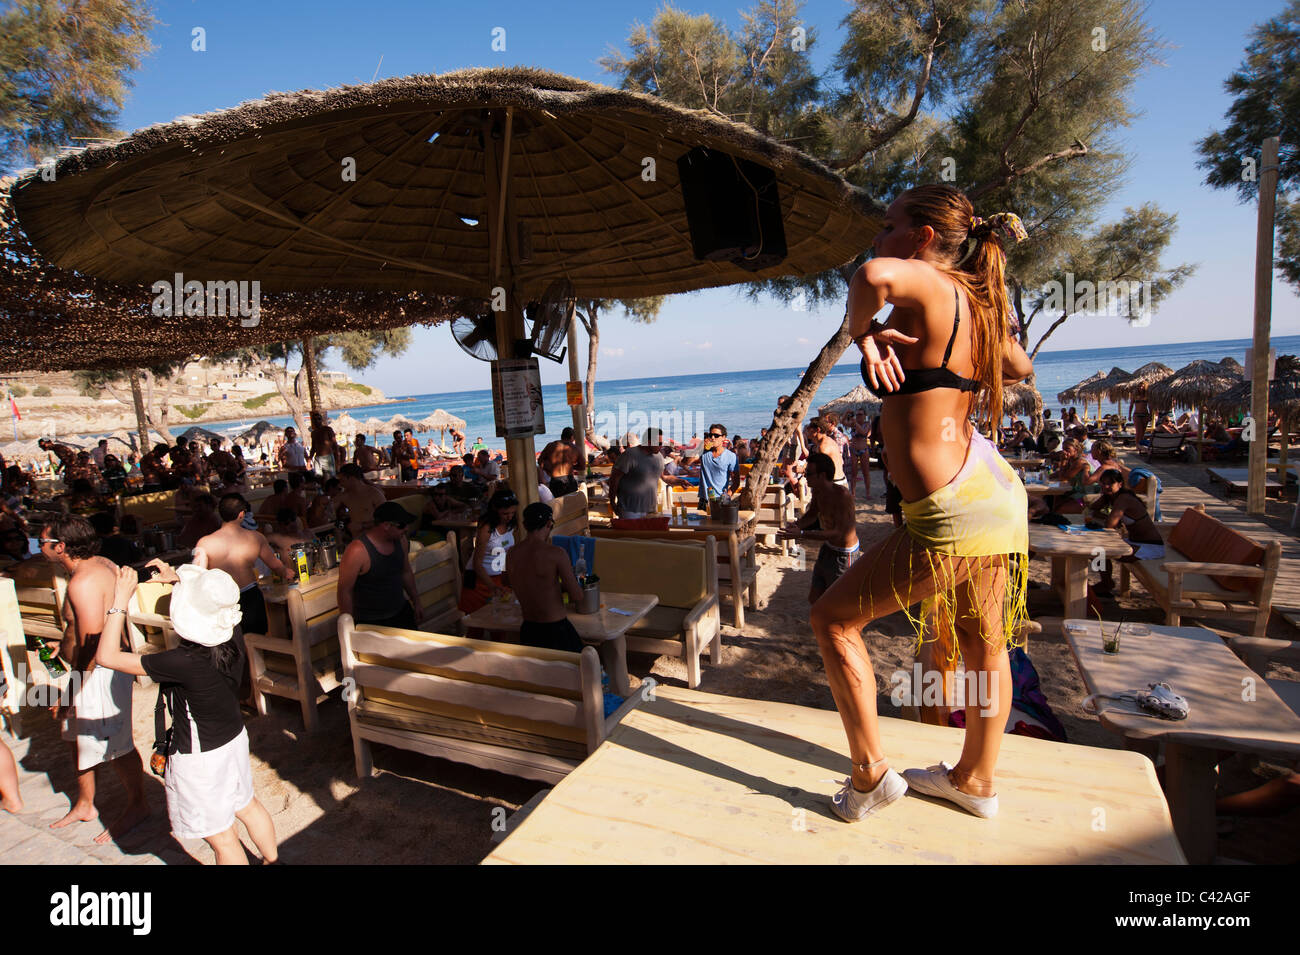 Paradise beach, mykonos, greece immagini e fotografie stock ad alta  risoluzione - Pagina 2 - Alamy